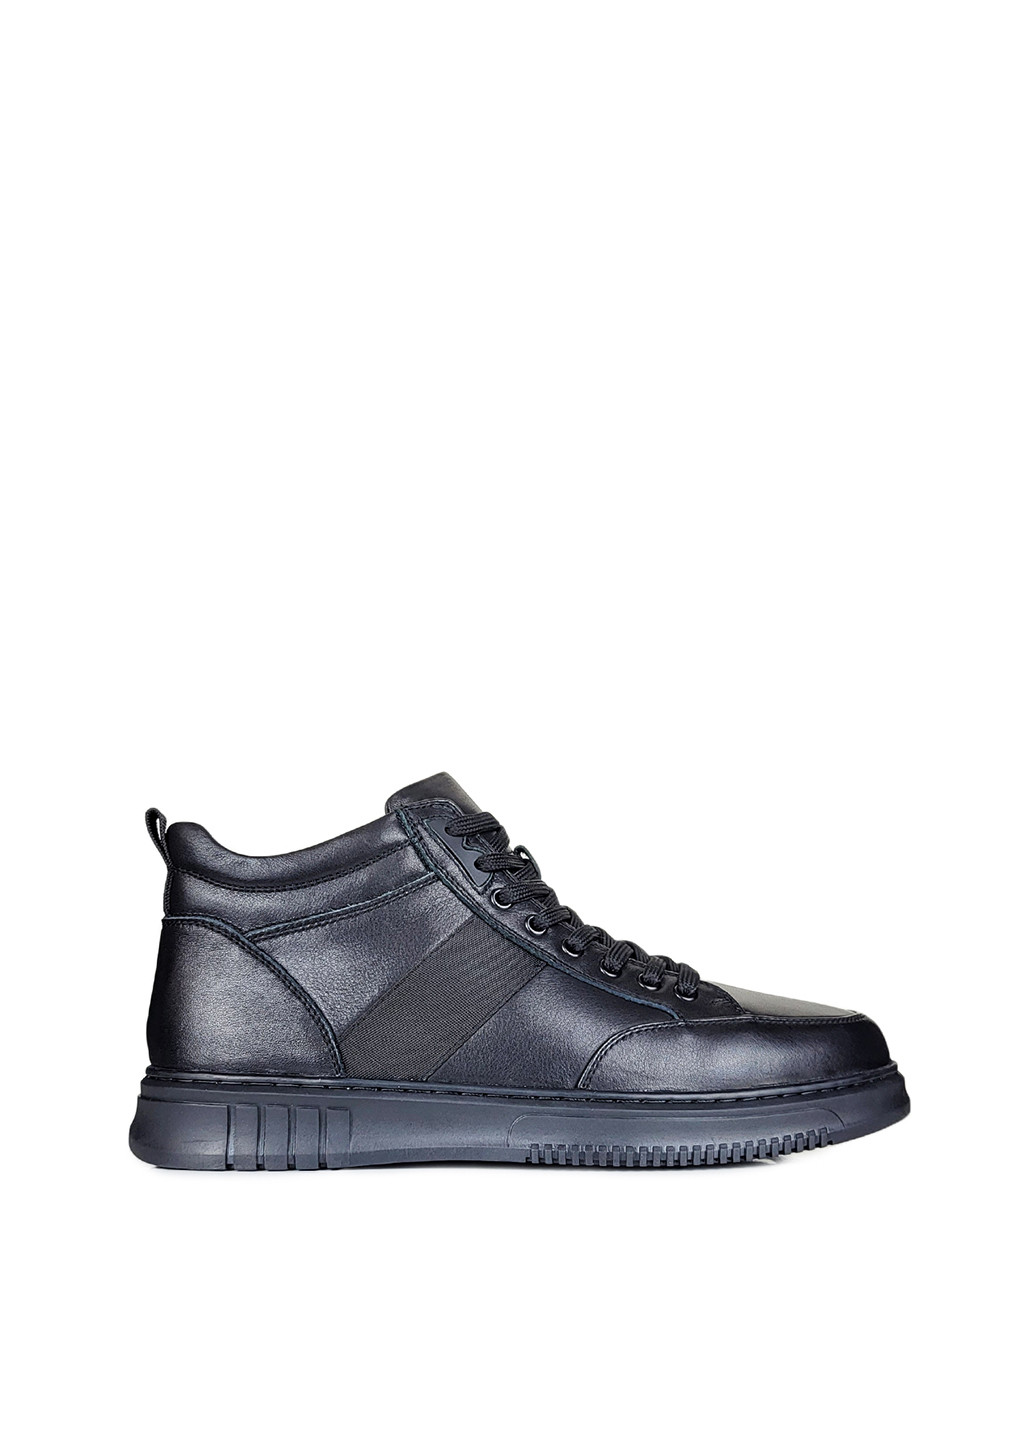 Черные зимние кожаные черные мужские ботинки с мехом,,jx395701m-1 чорн,40 Berisstini